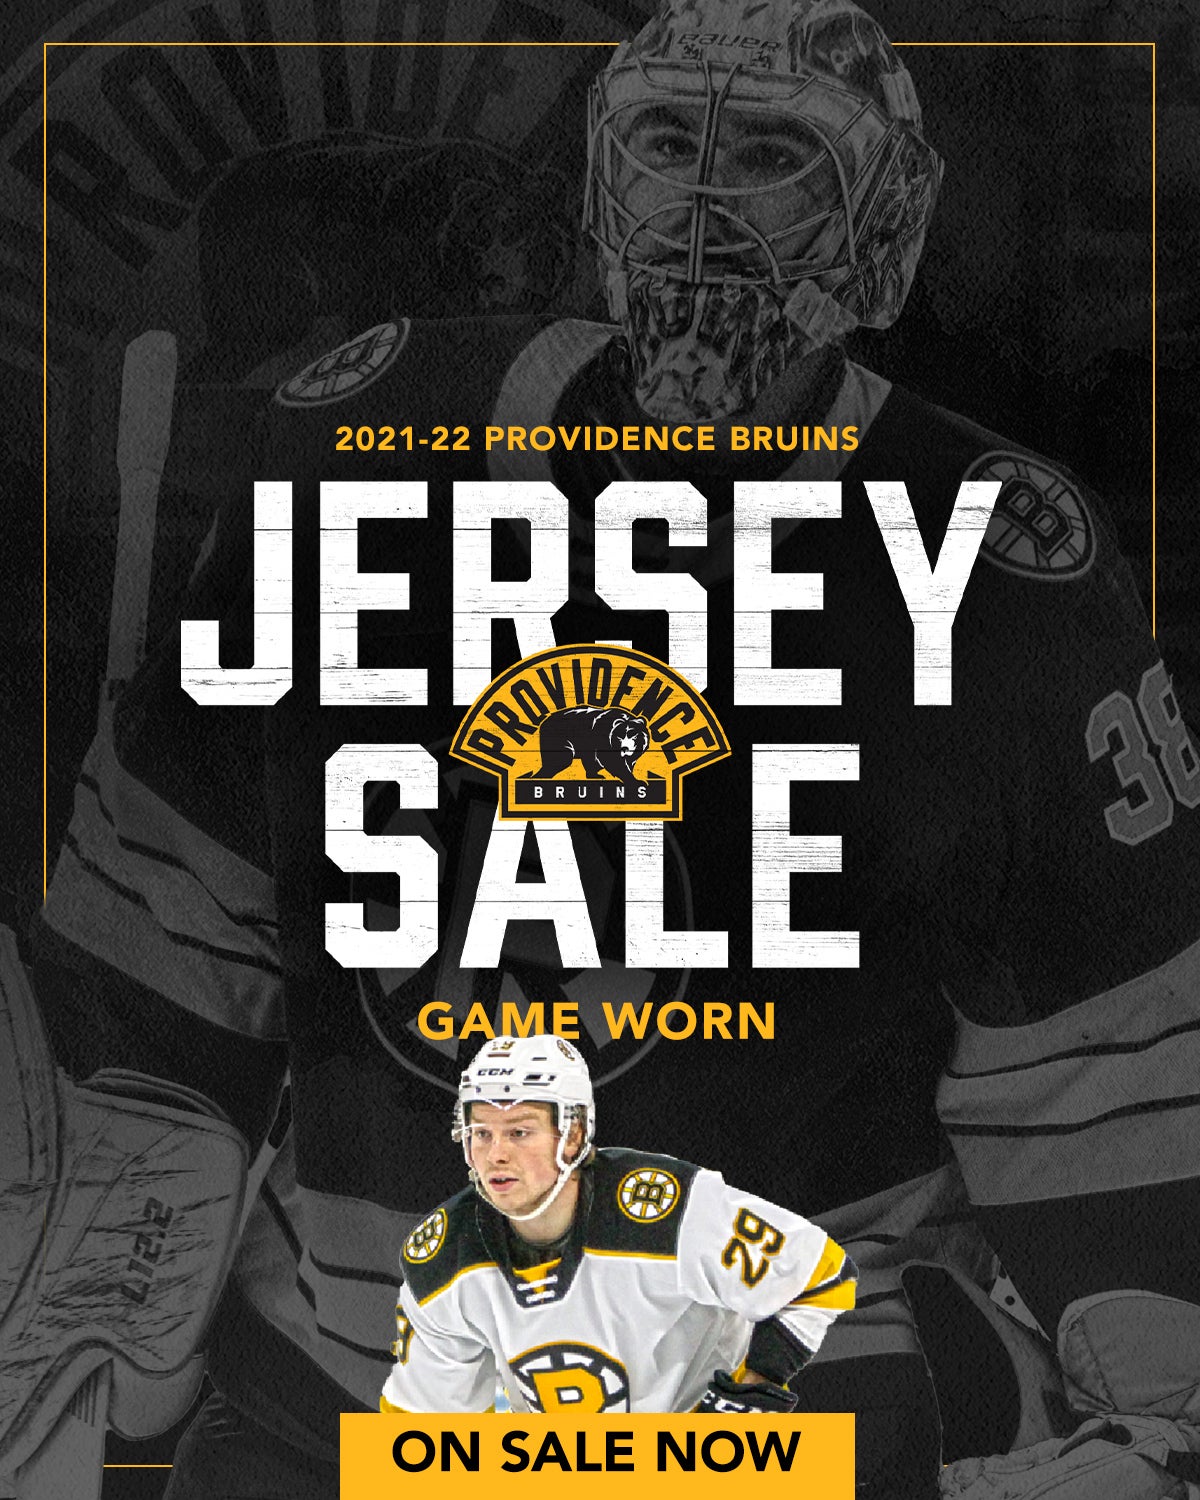 CCM Boston Bruins NHL Fan Jerseys for sale